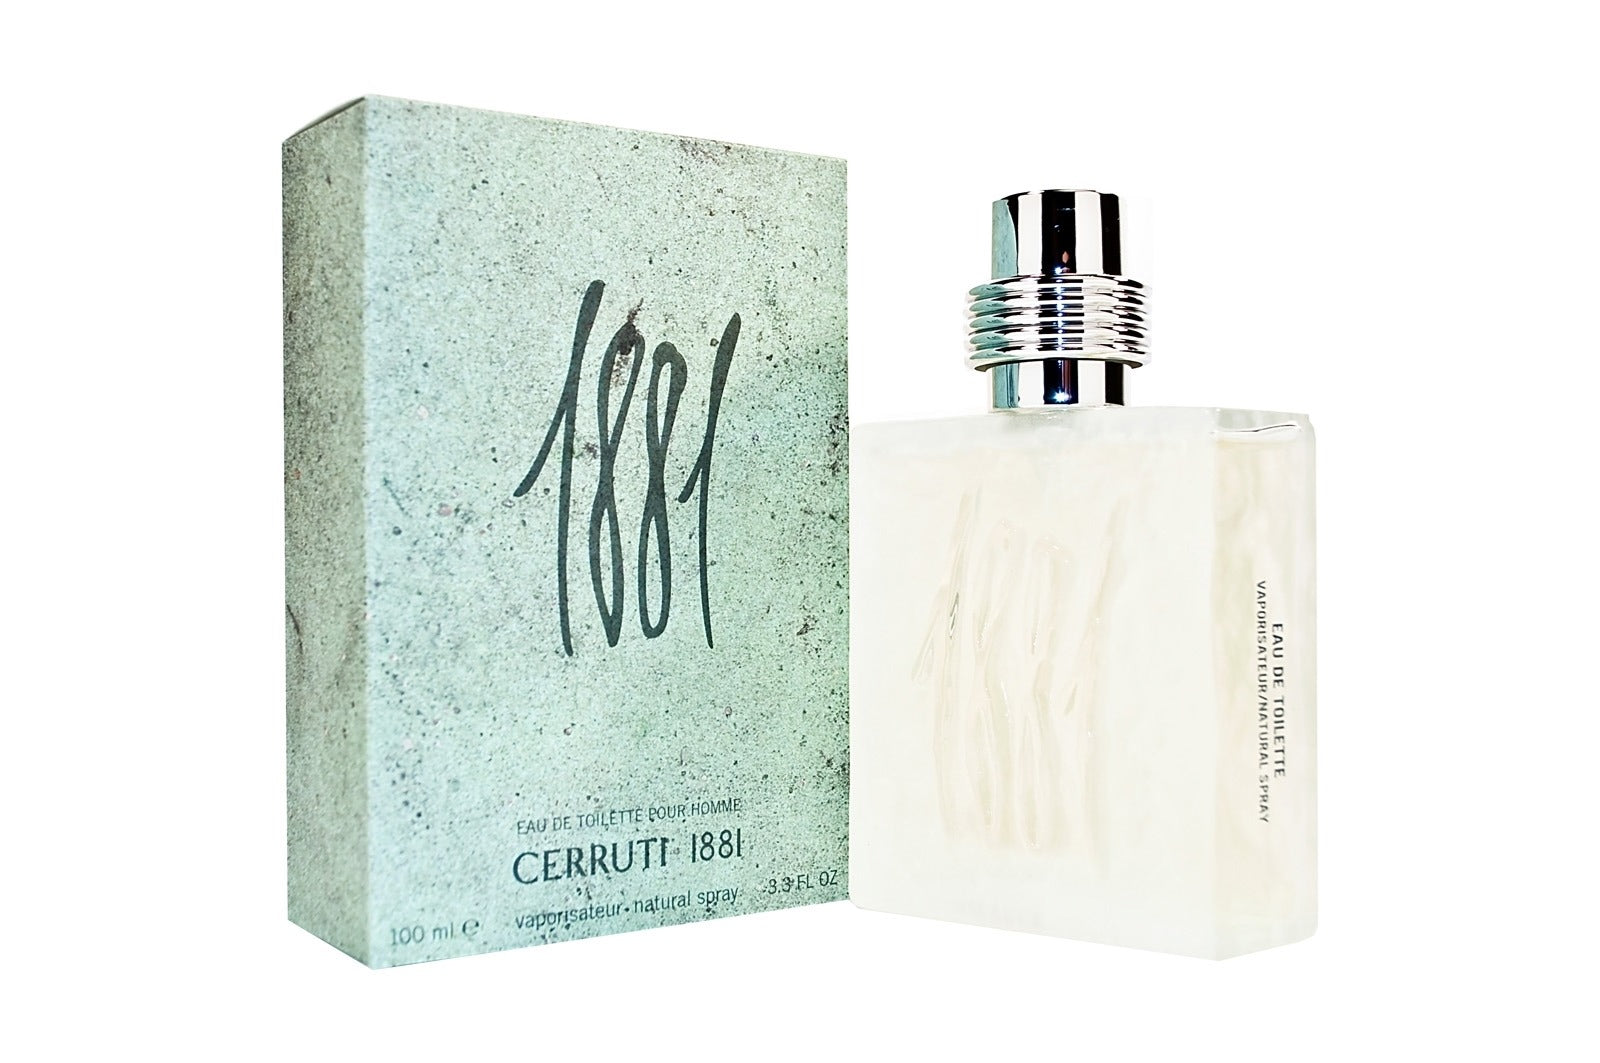 Parfums 1881 Vert de la marque Cerruti pour homme 100 ml